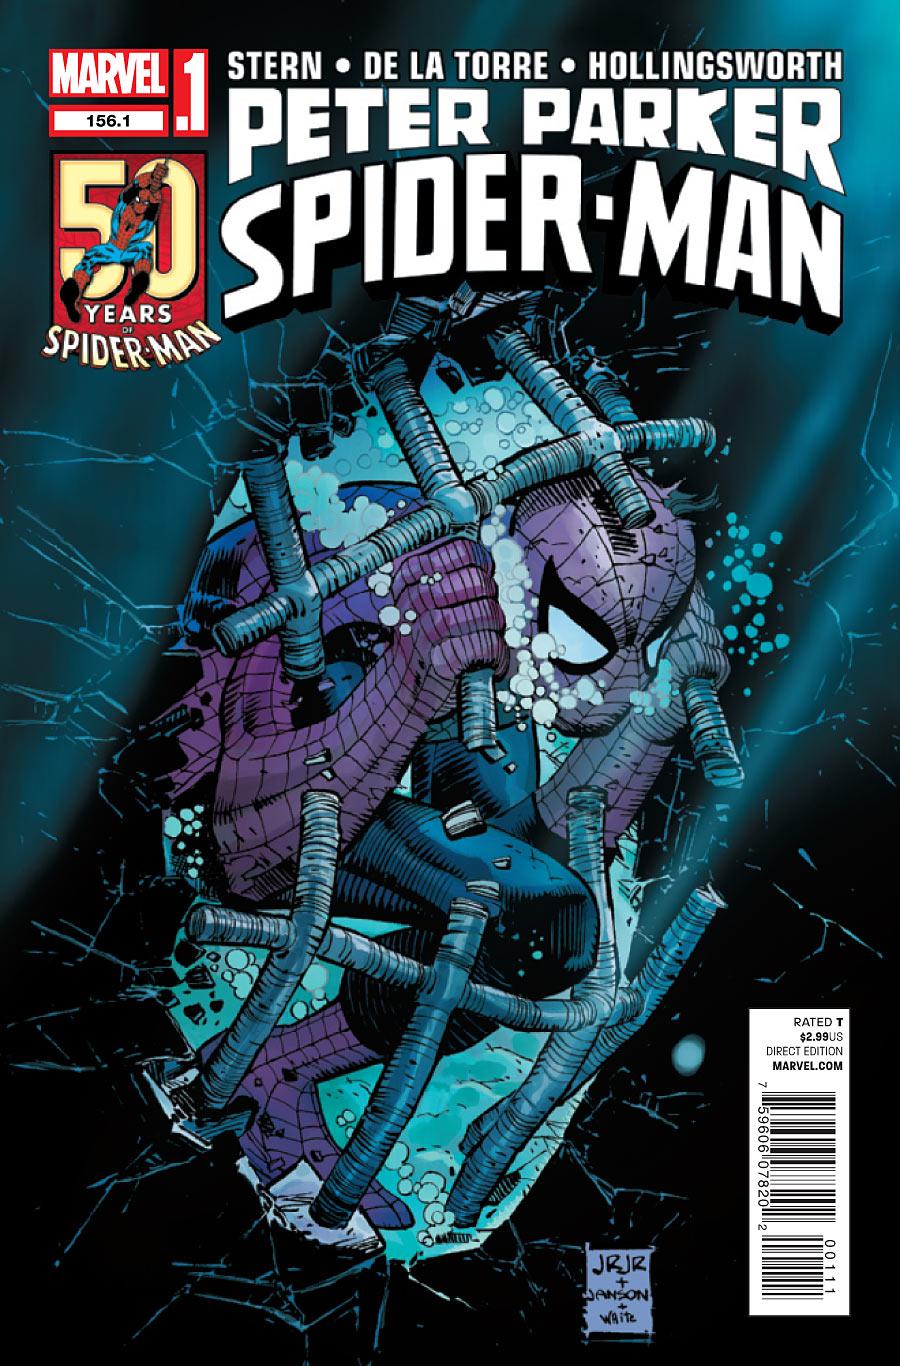 Peter Parker, Spider-Man Vol. 1 #156.1